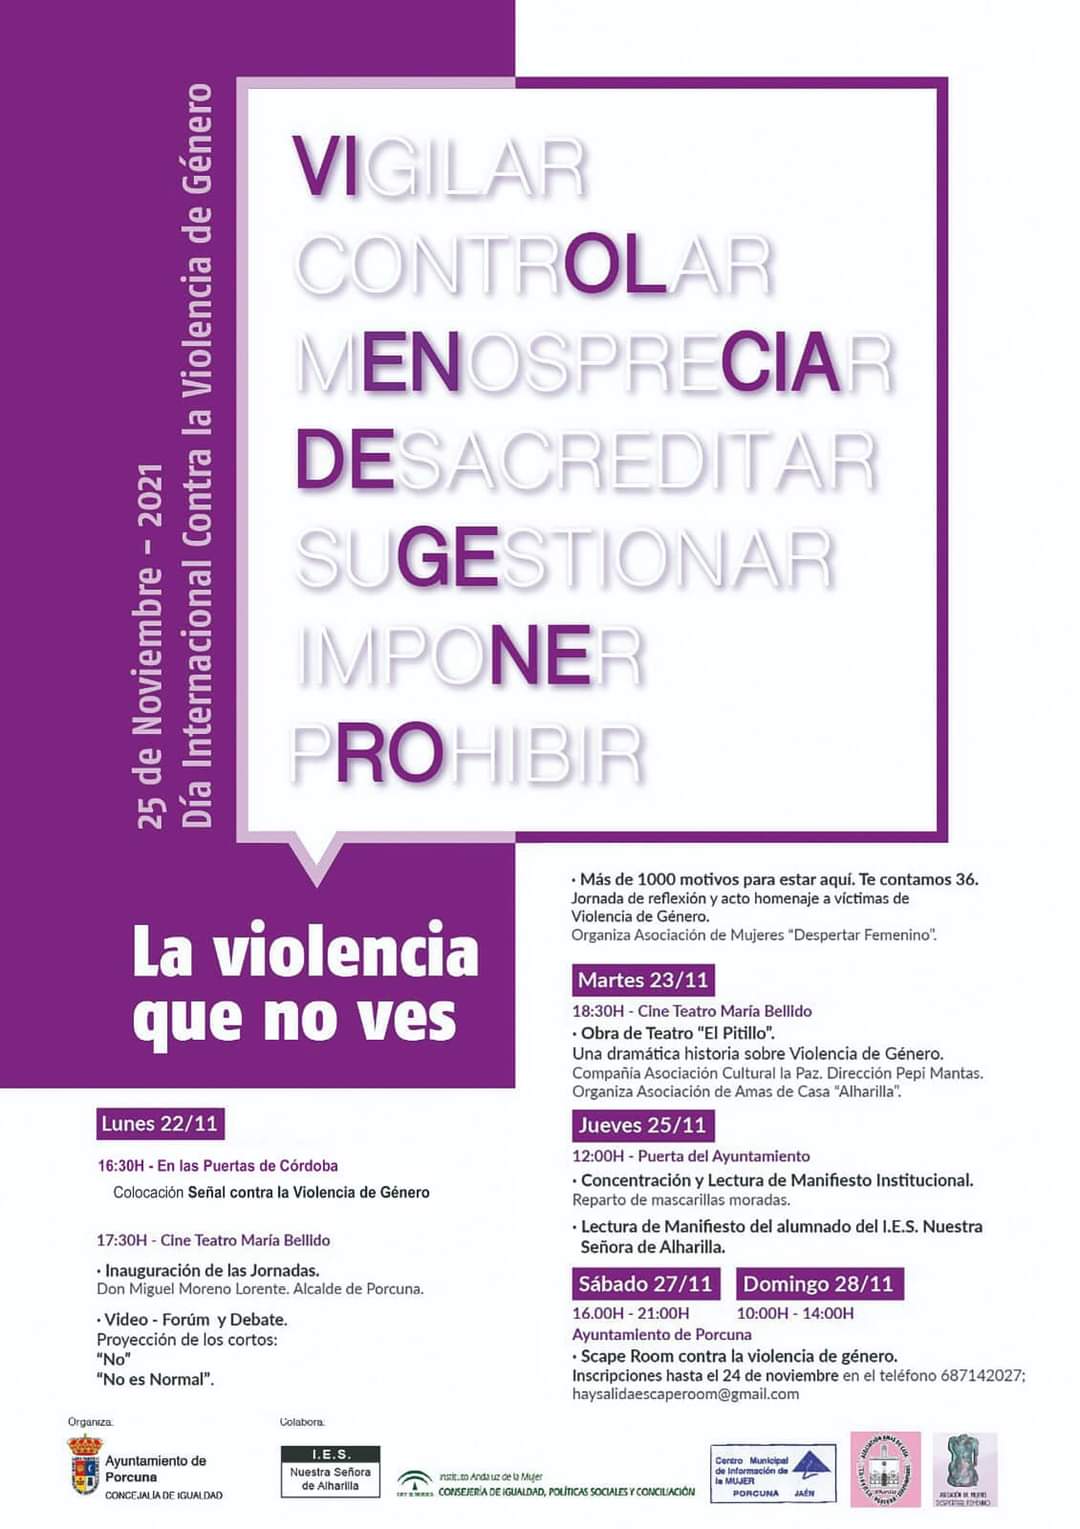 Jornadas Contra la Violencia de Género